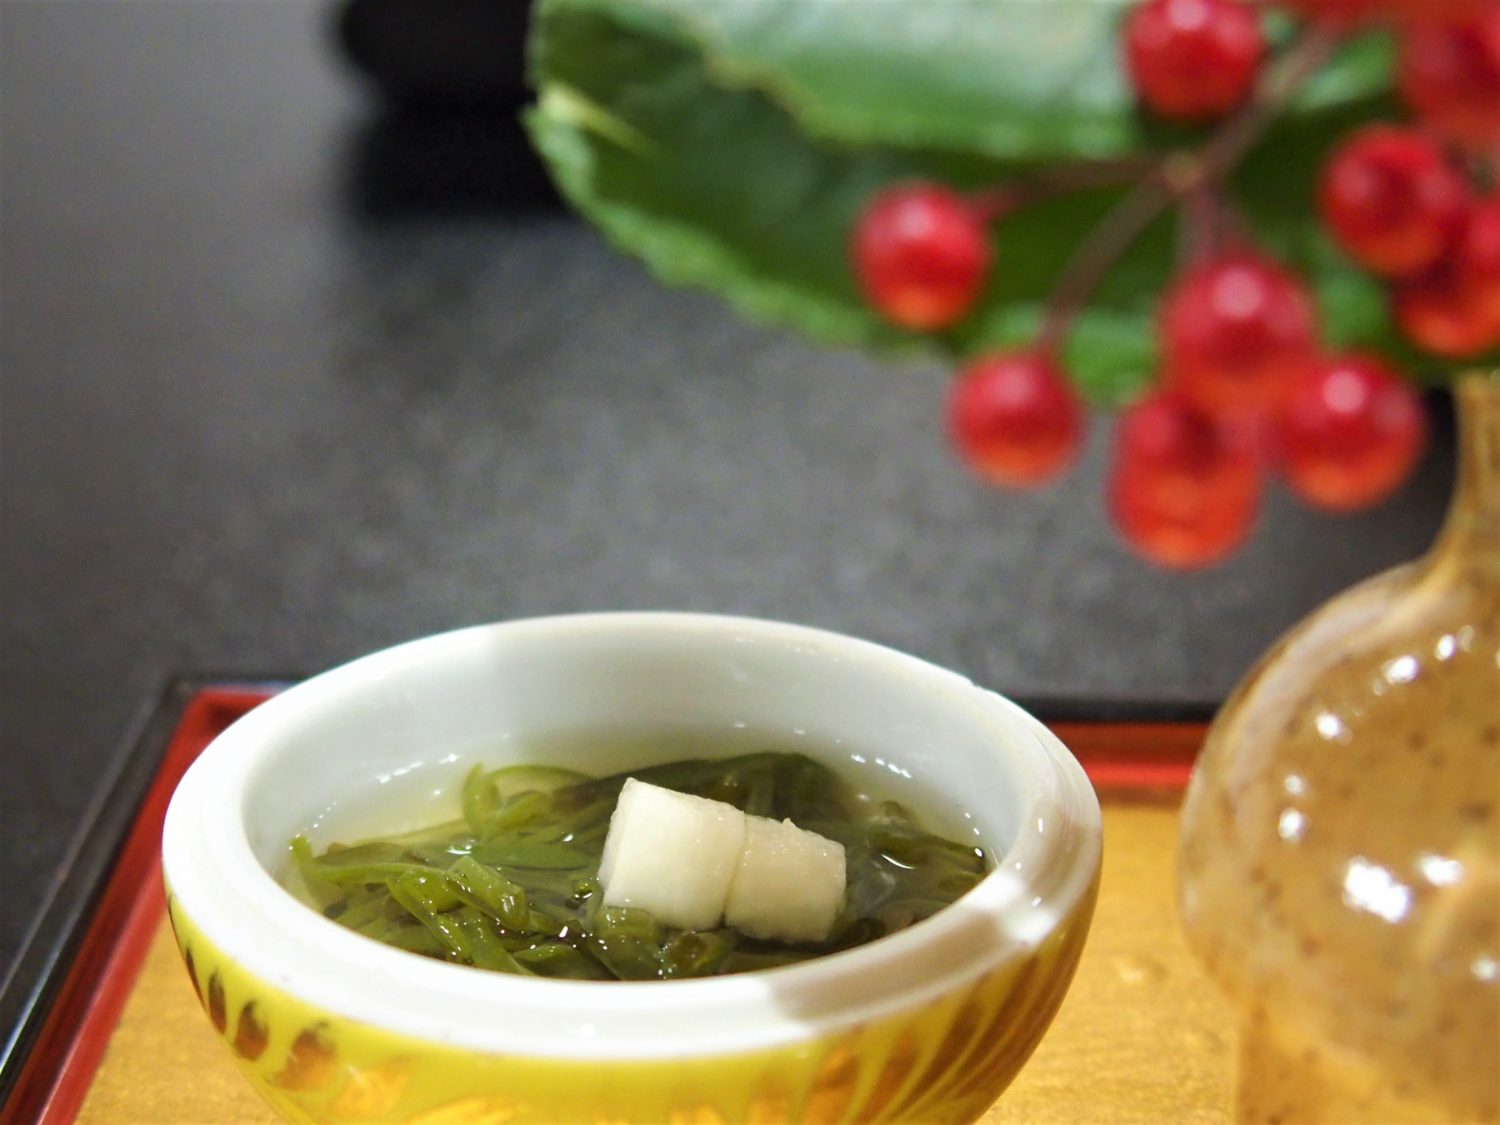 "Mozuku" seaweed in vinegar